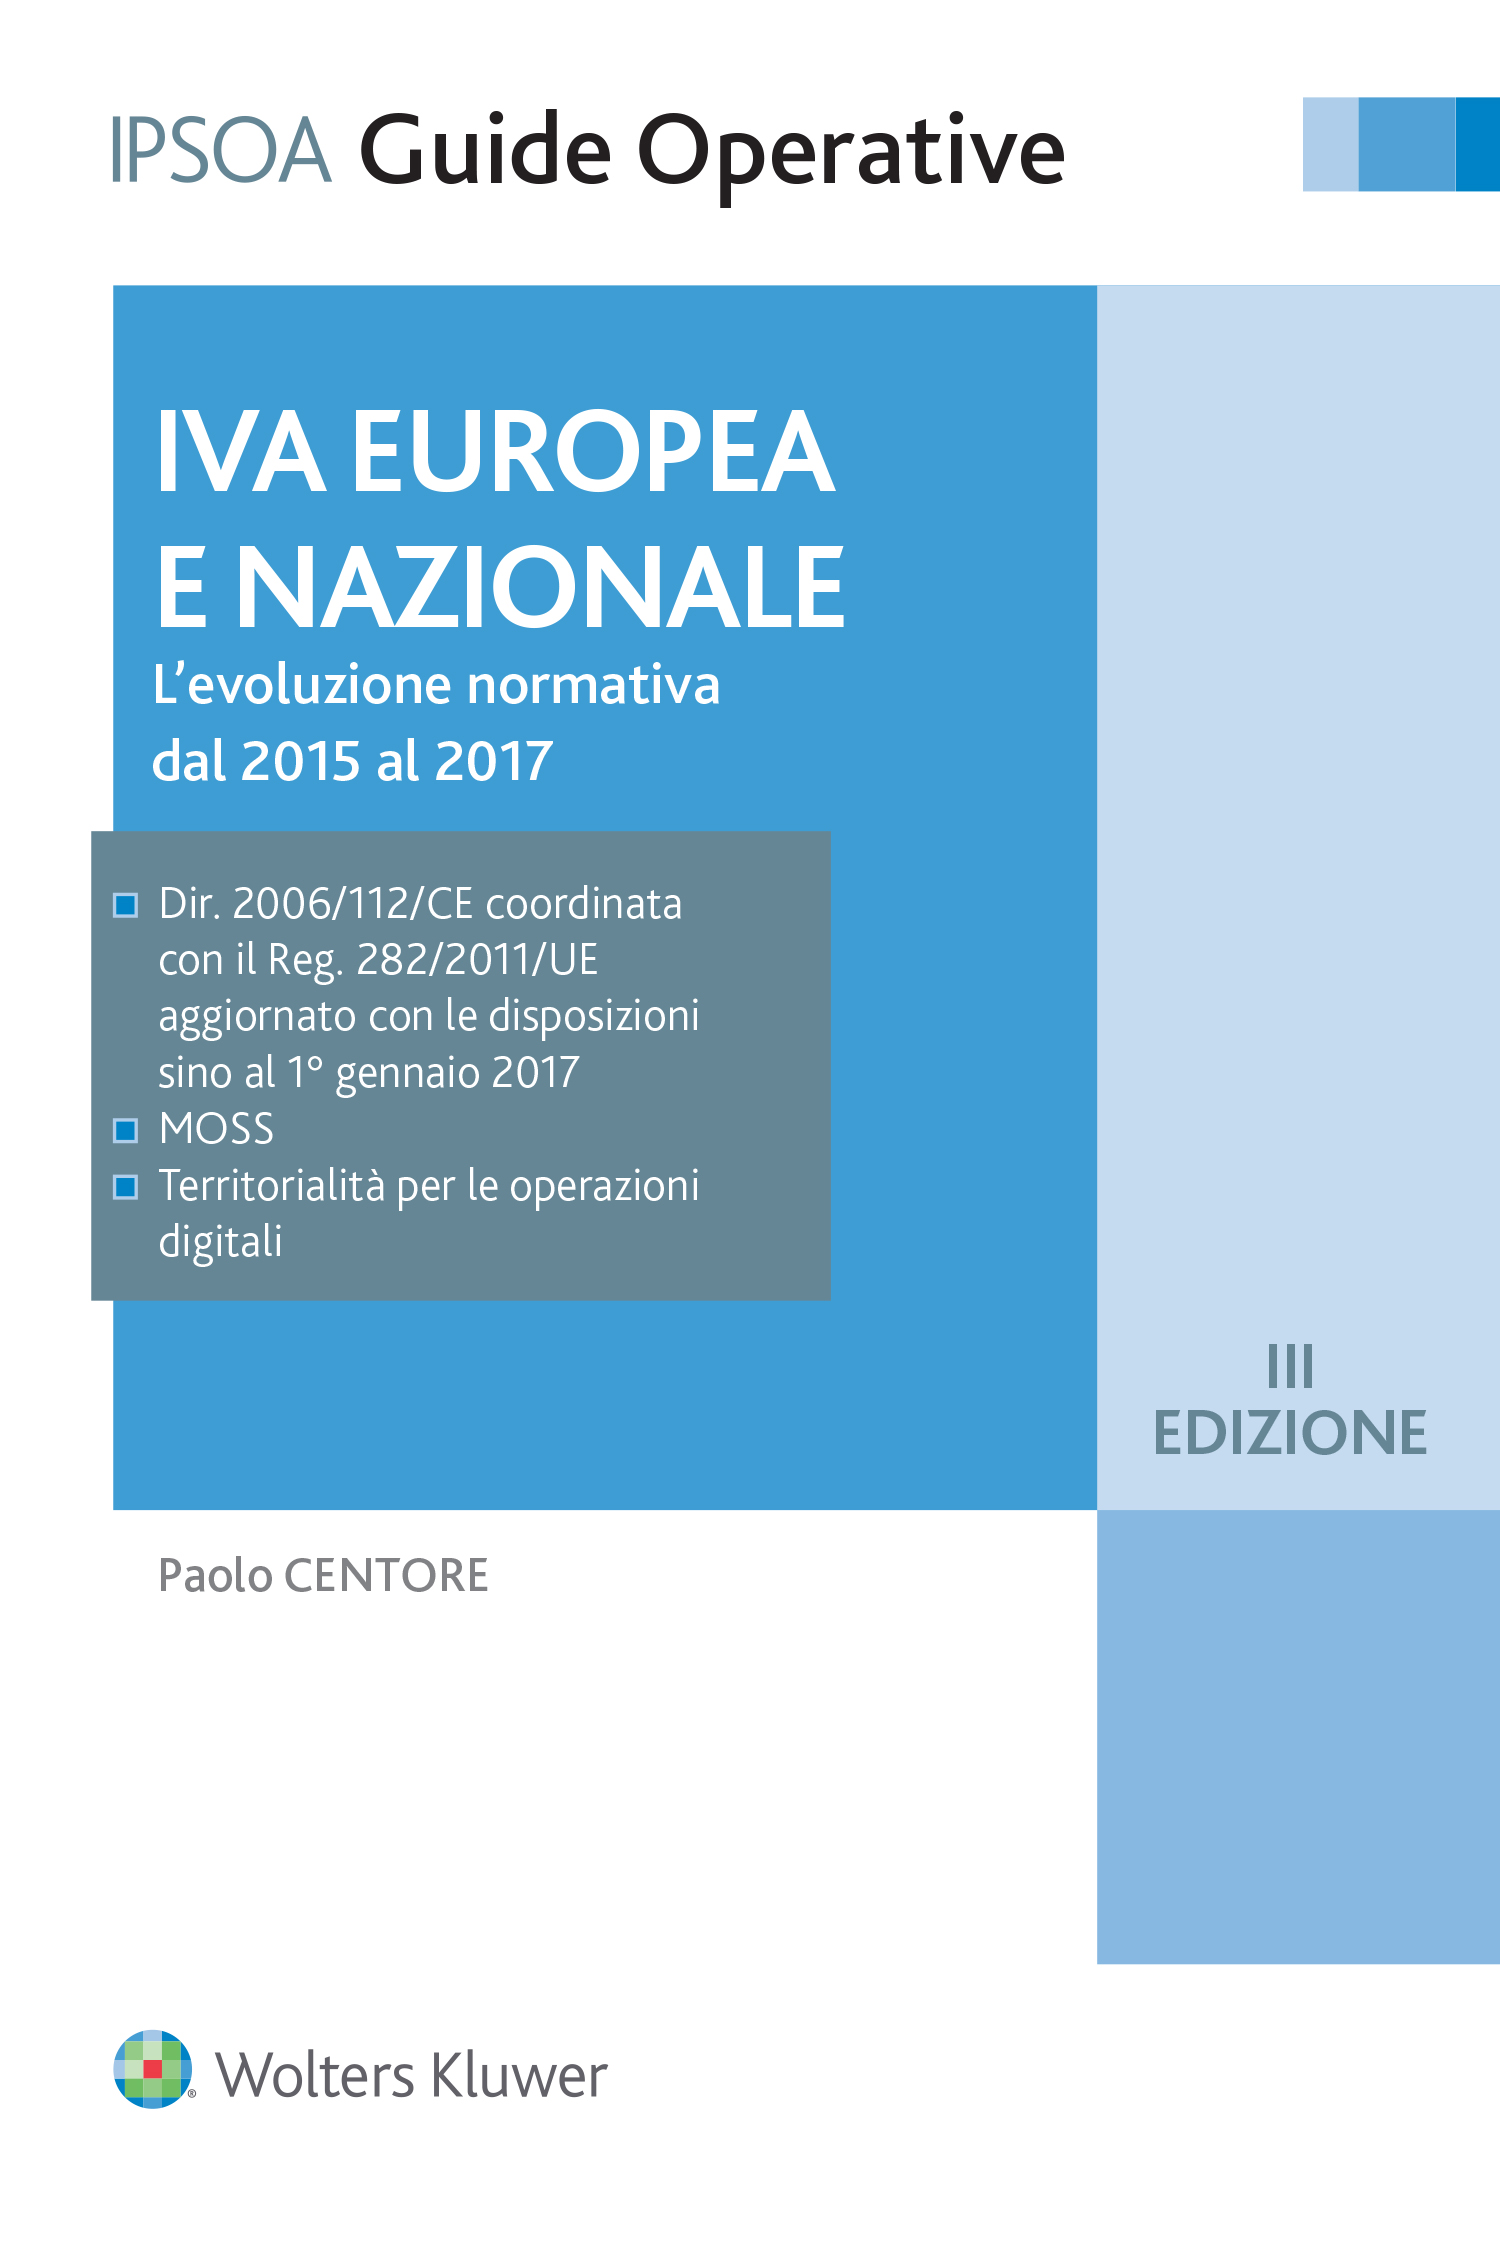 IVA Europea E Nazionale III EDIZIONE